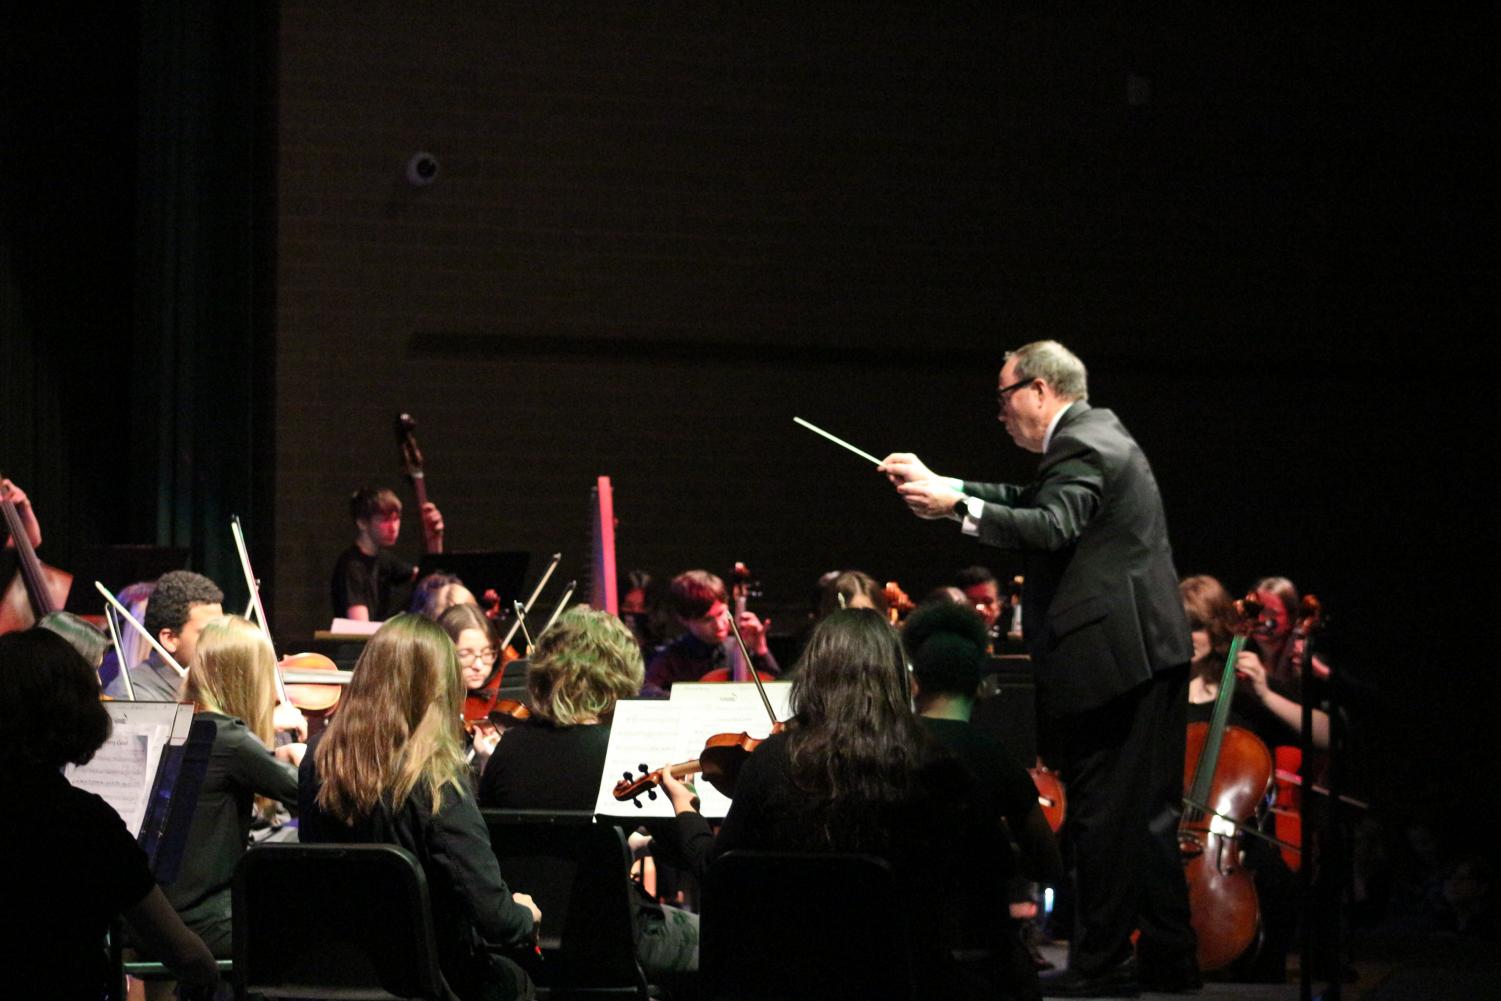 Orchestra+Concert+12%2F14+%28photos+by+Luis+Aaron+Lozano%29